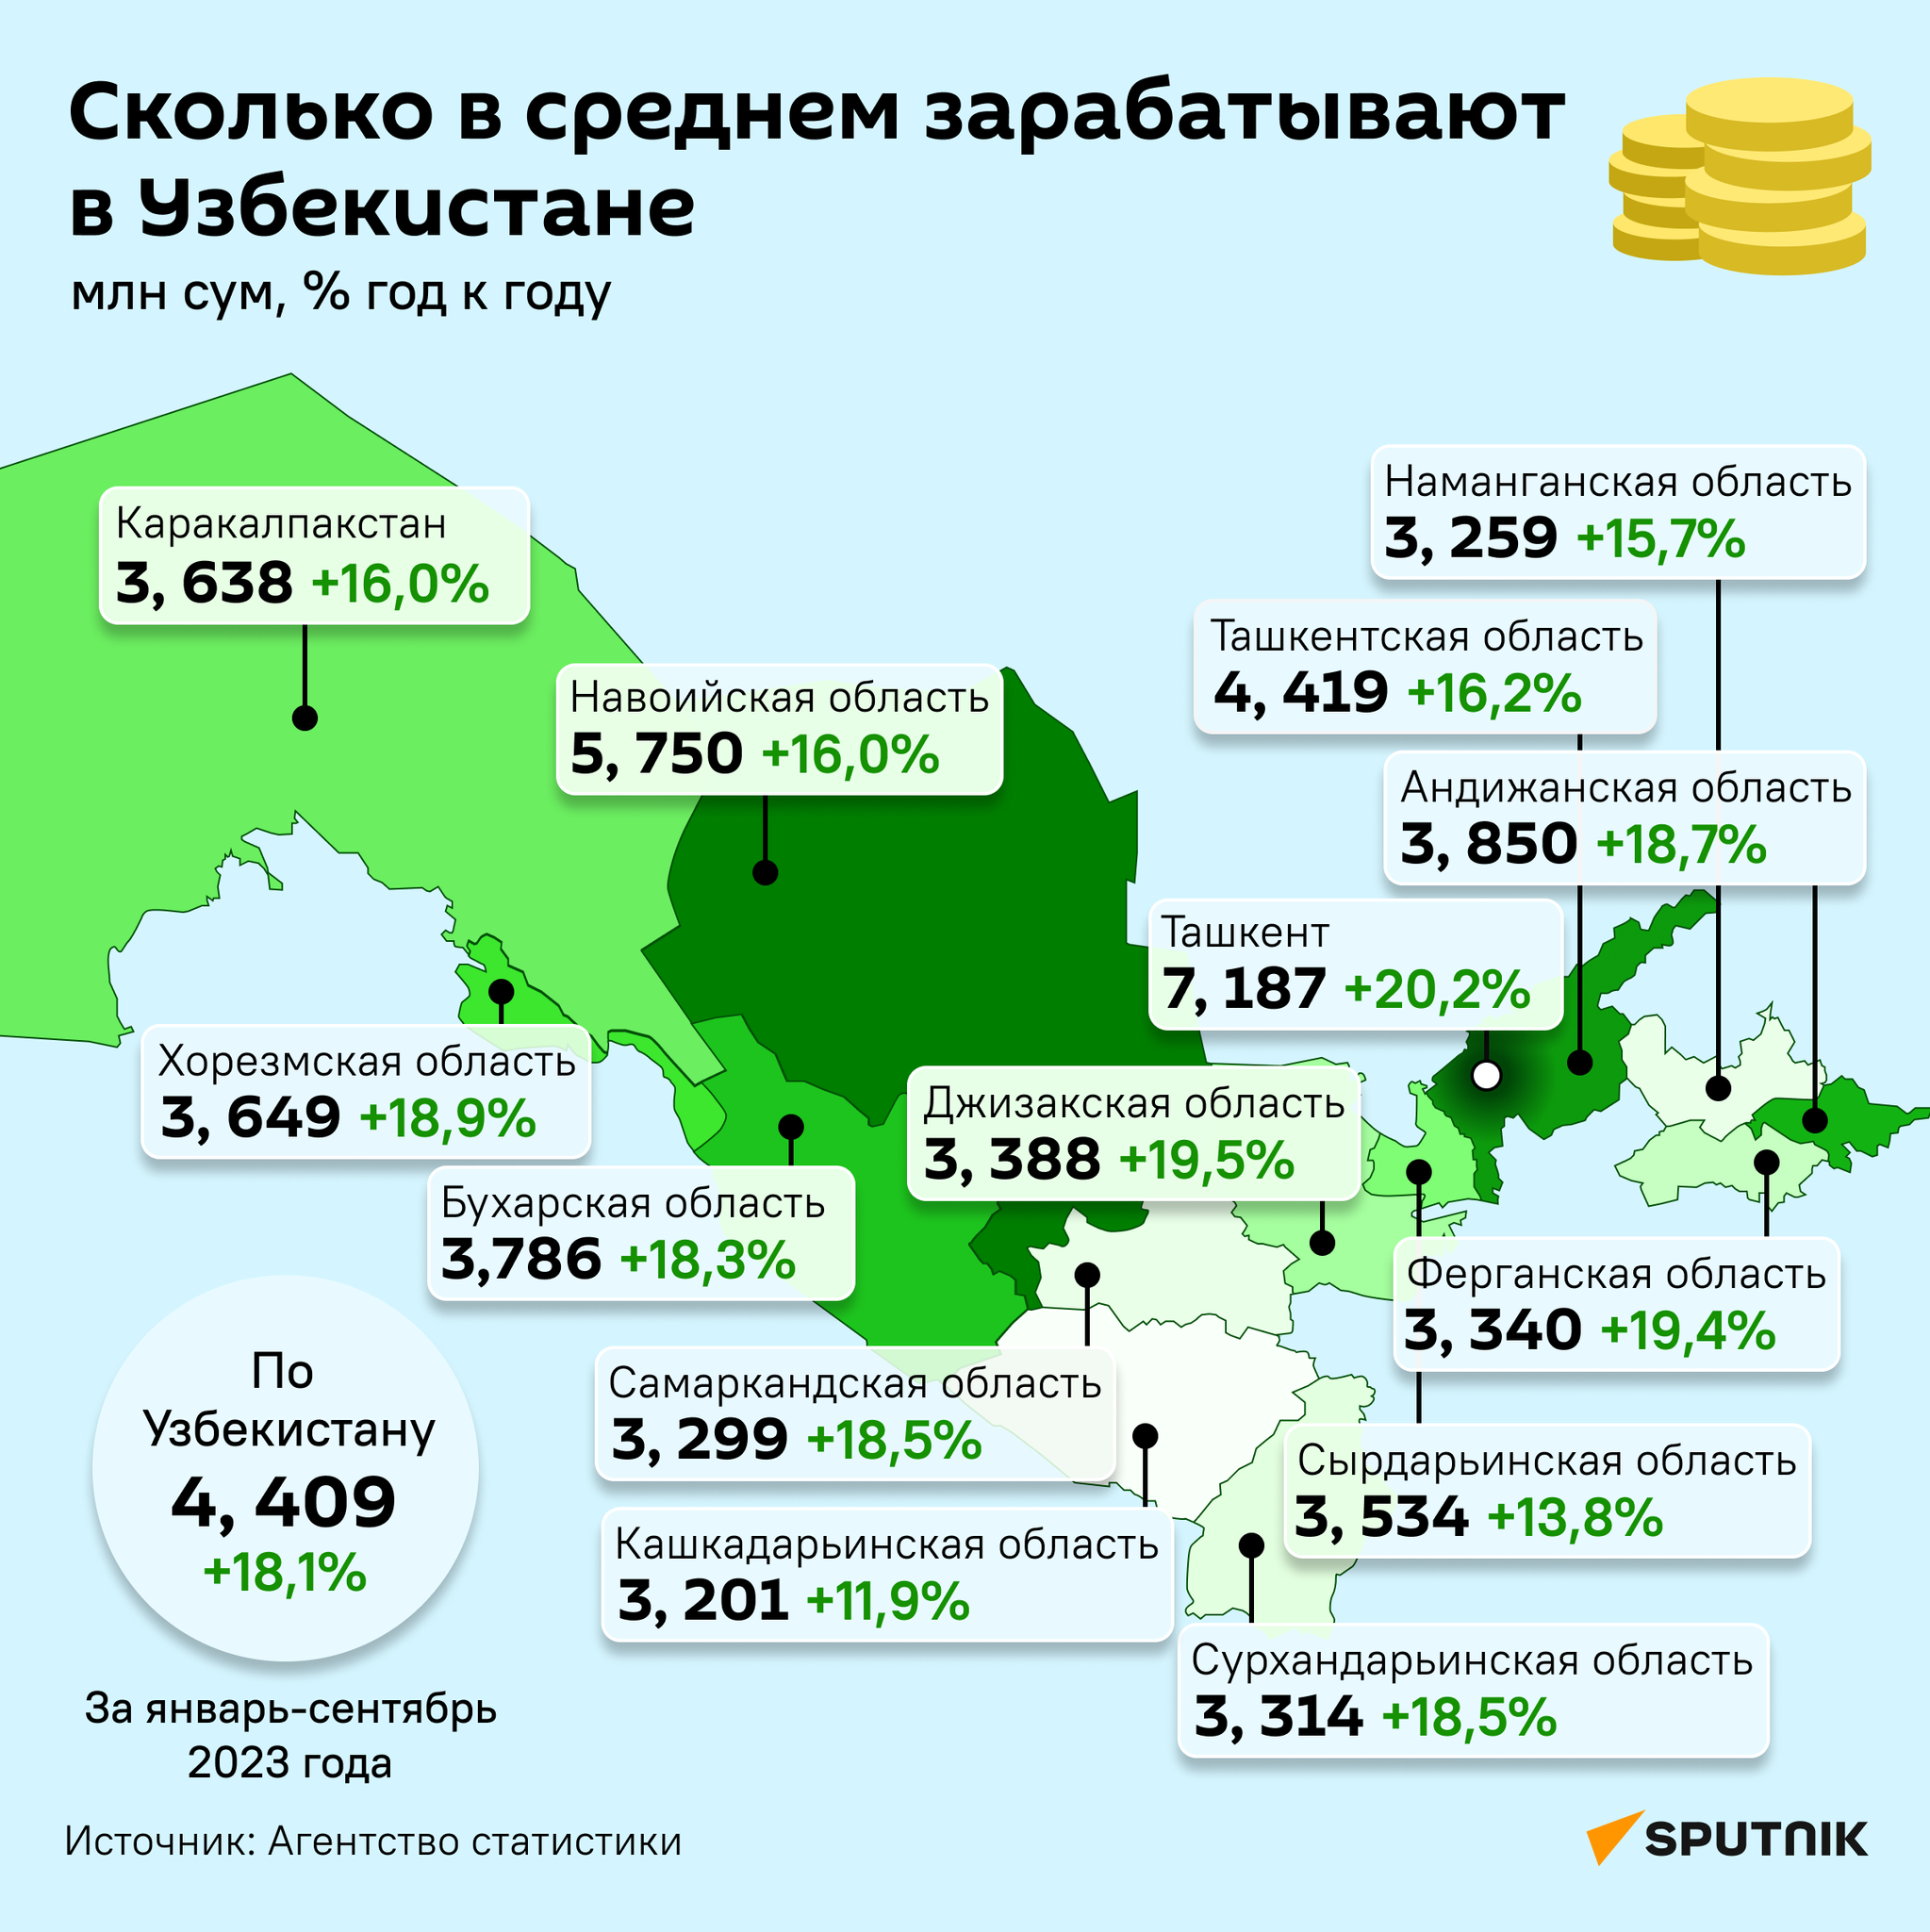 Сколько в среднем зарабатывают в Узбекистане. - Sputnik Узбекистан